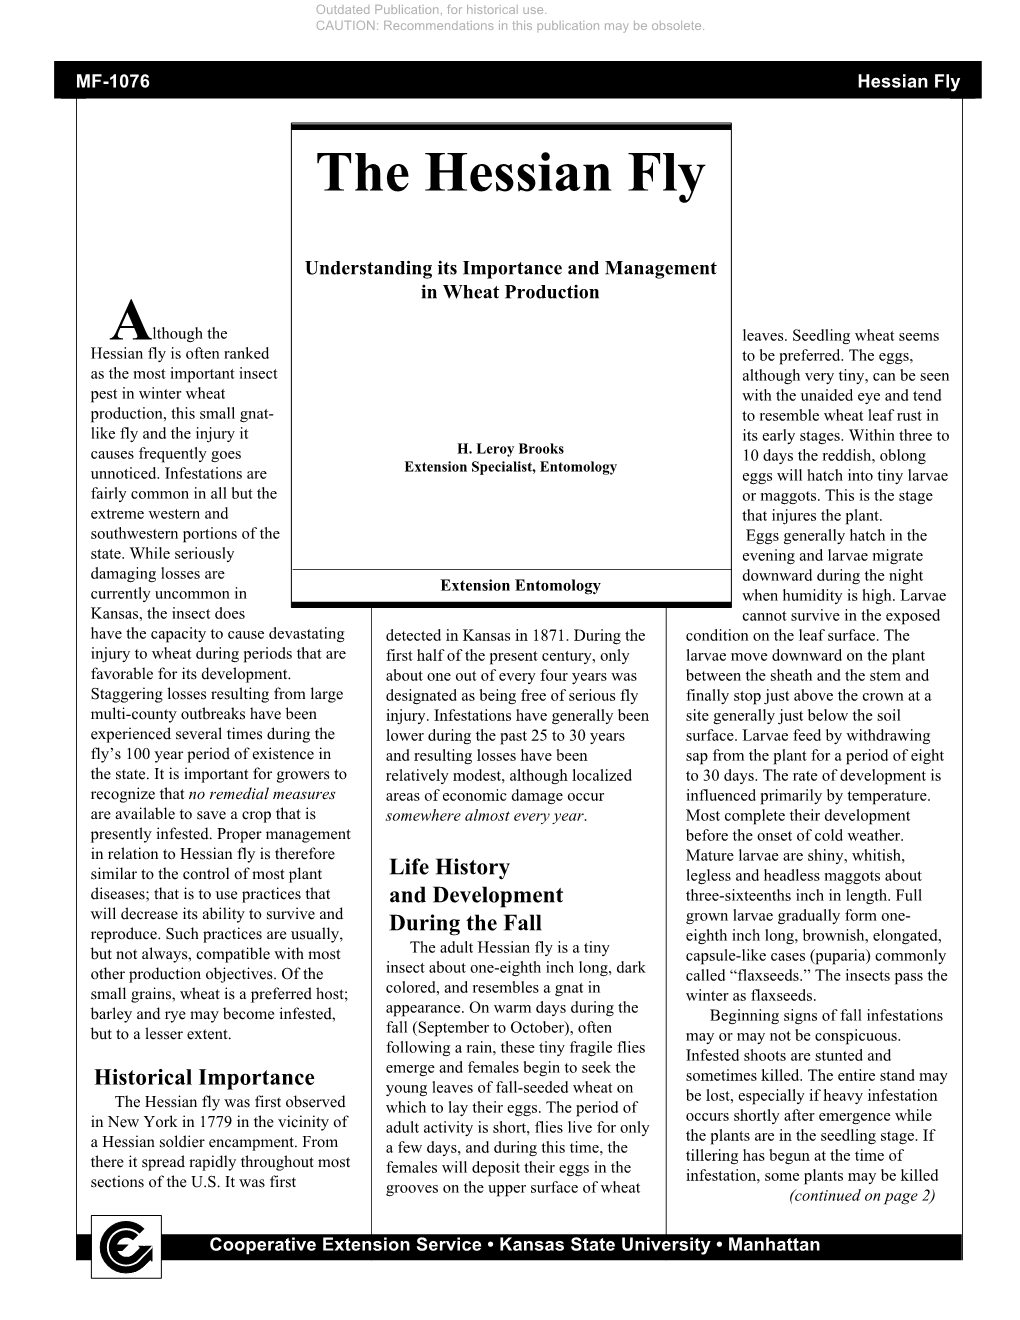 Hessian Fly the Hessian Fly